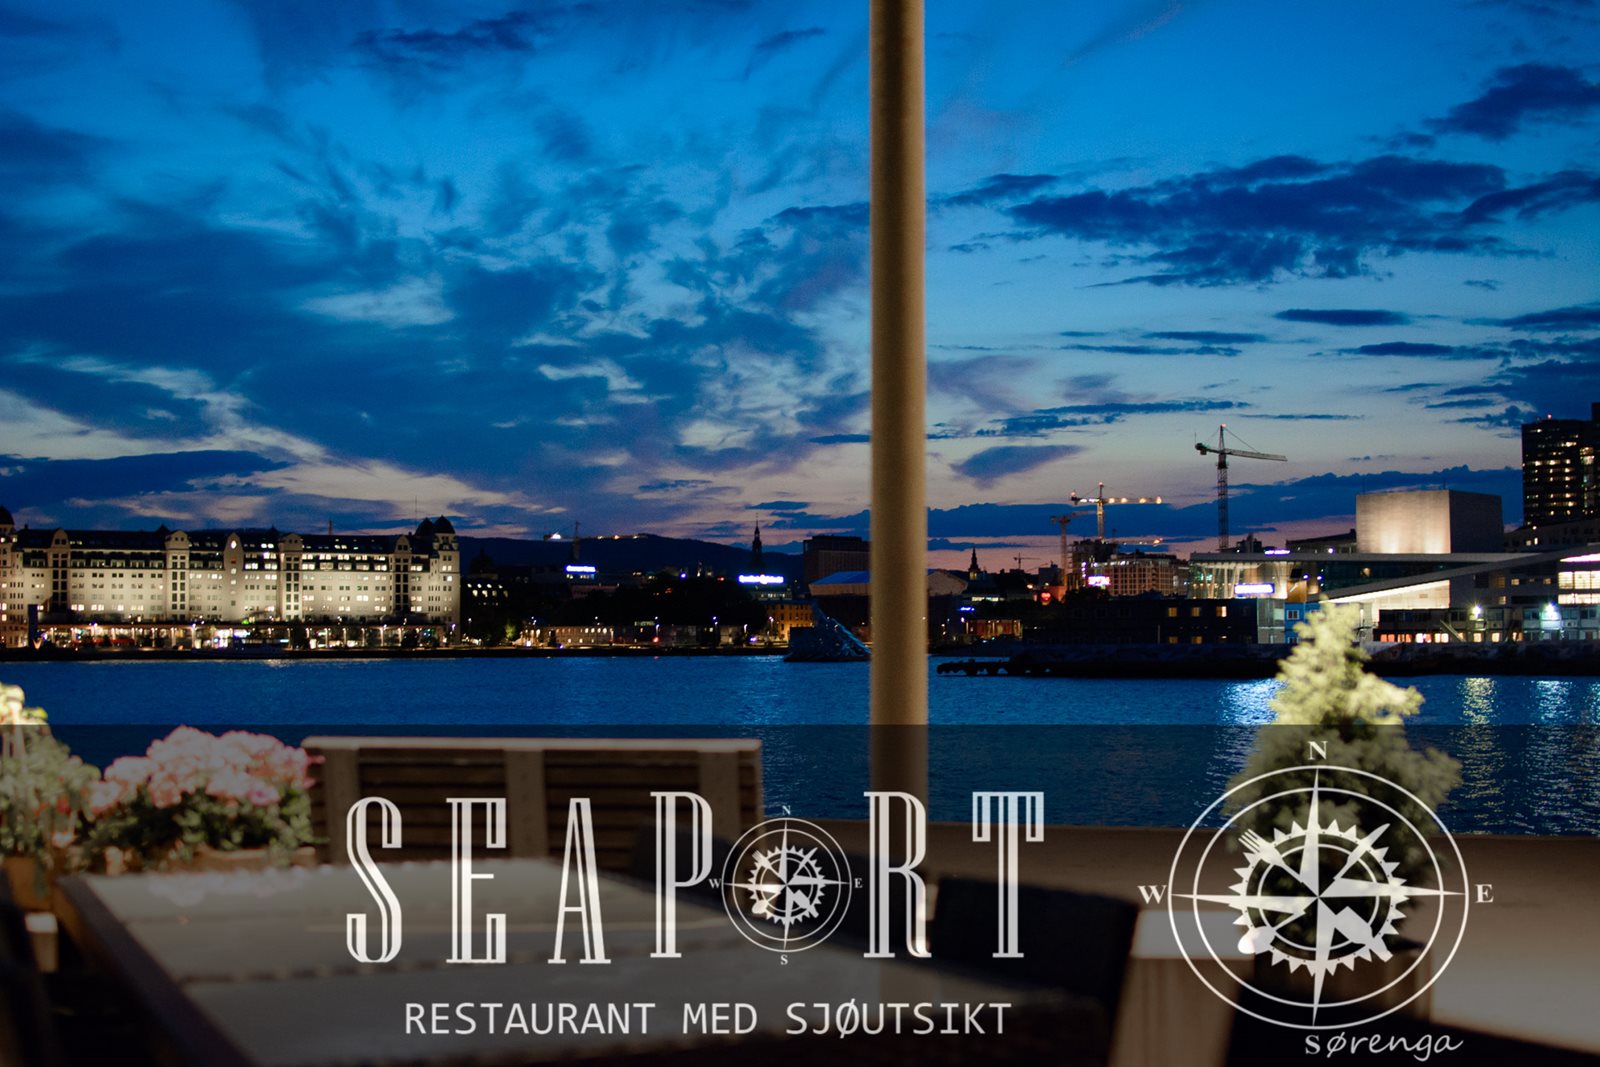 seaport-restaurant-italiensk-romantisk-utsikt-bjorvika-sorenga-oslo-8741-reklamefotograf